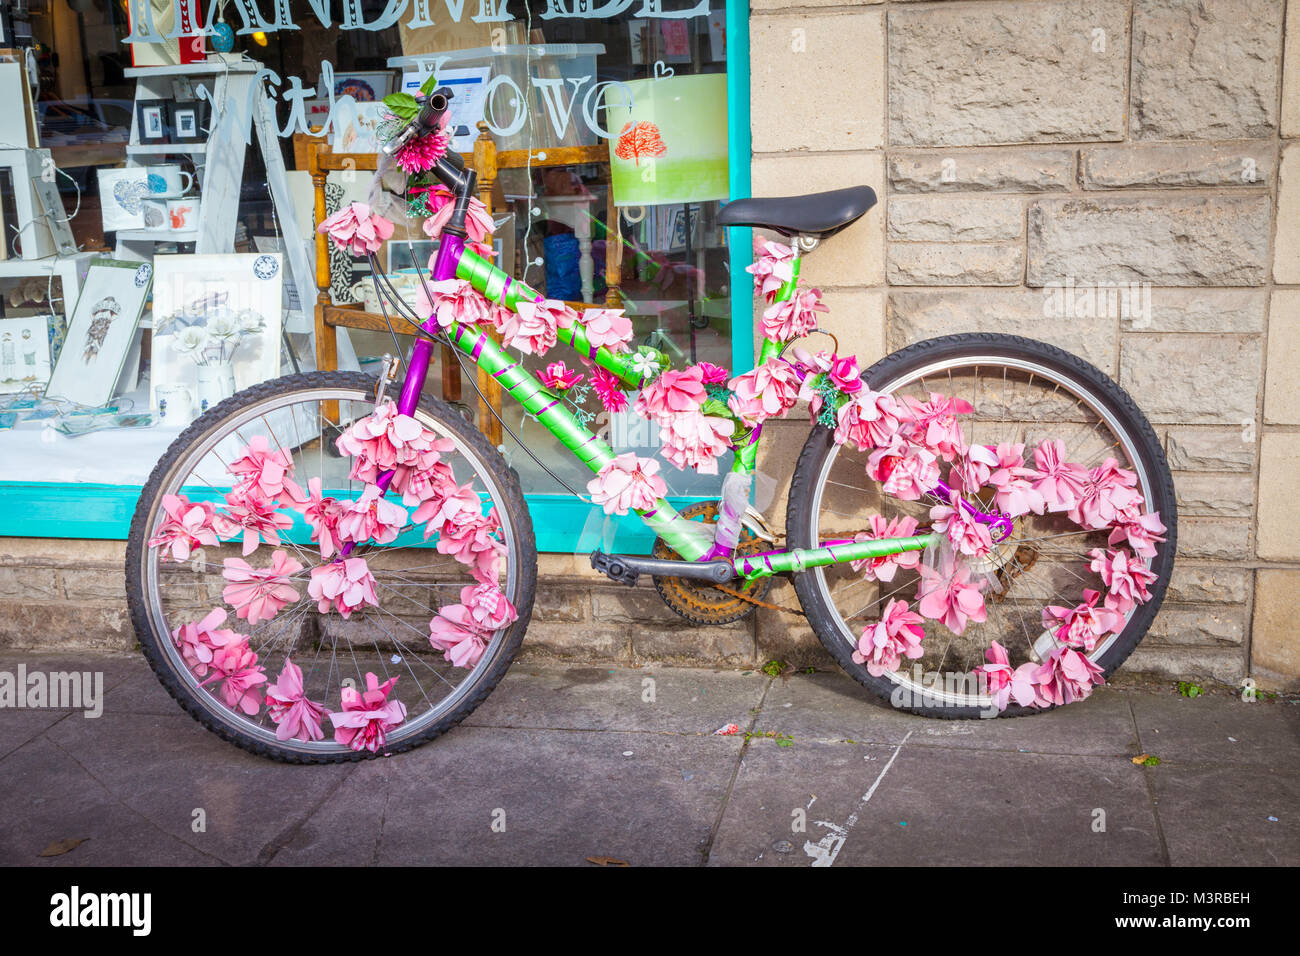 Decorated bike immagini e fotografie stock ad alta risoluzione - Alamy